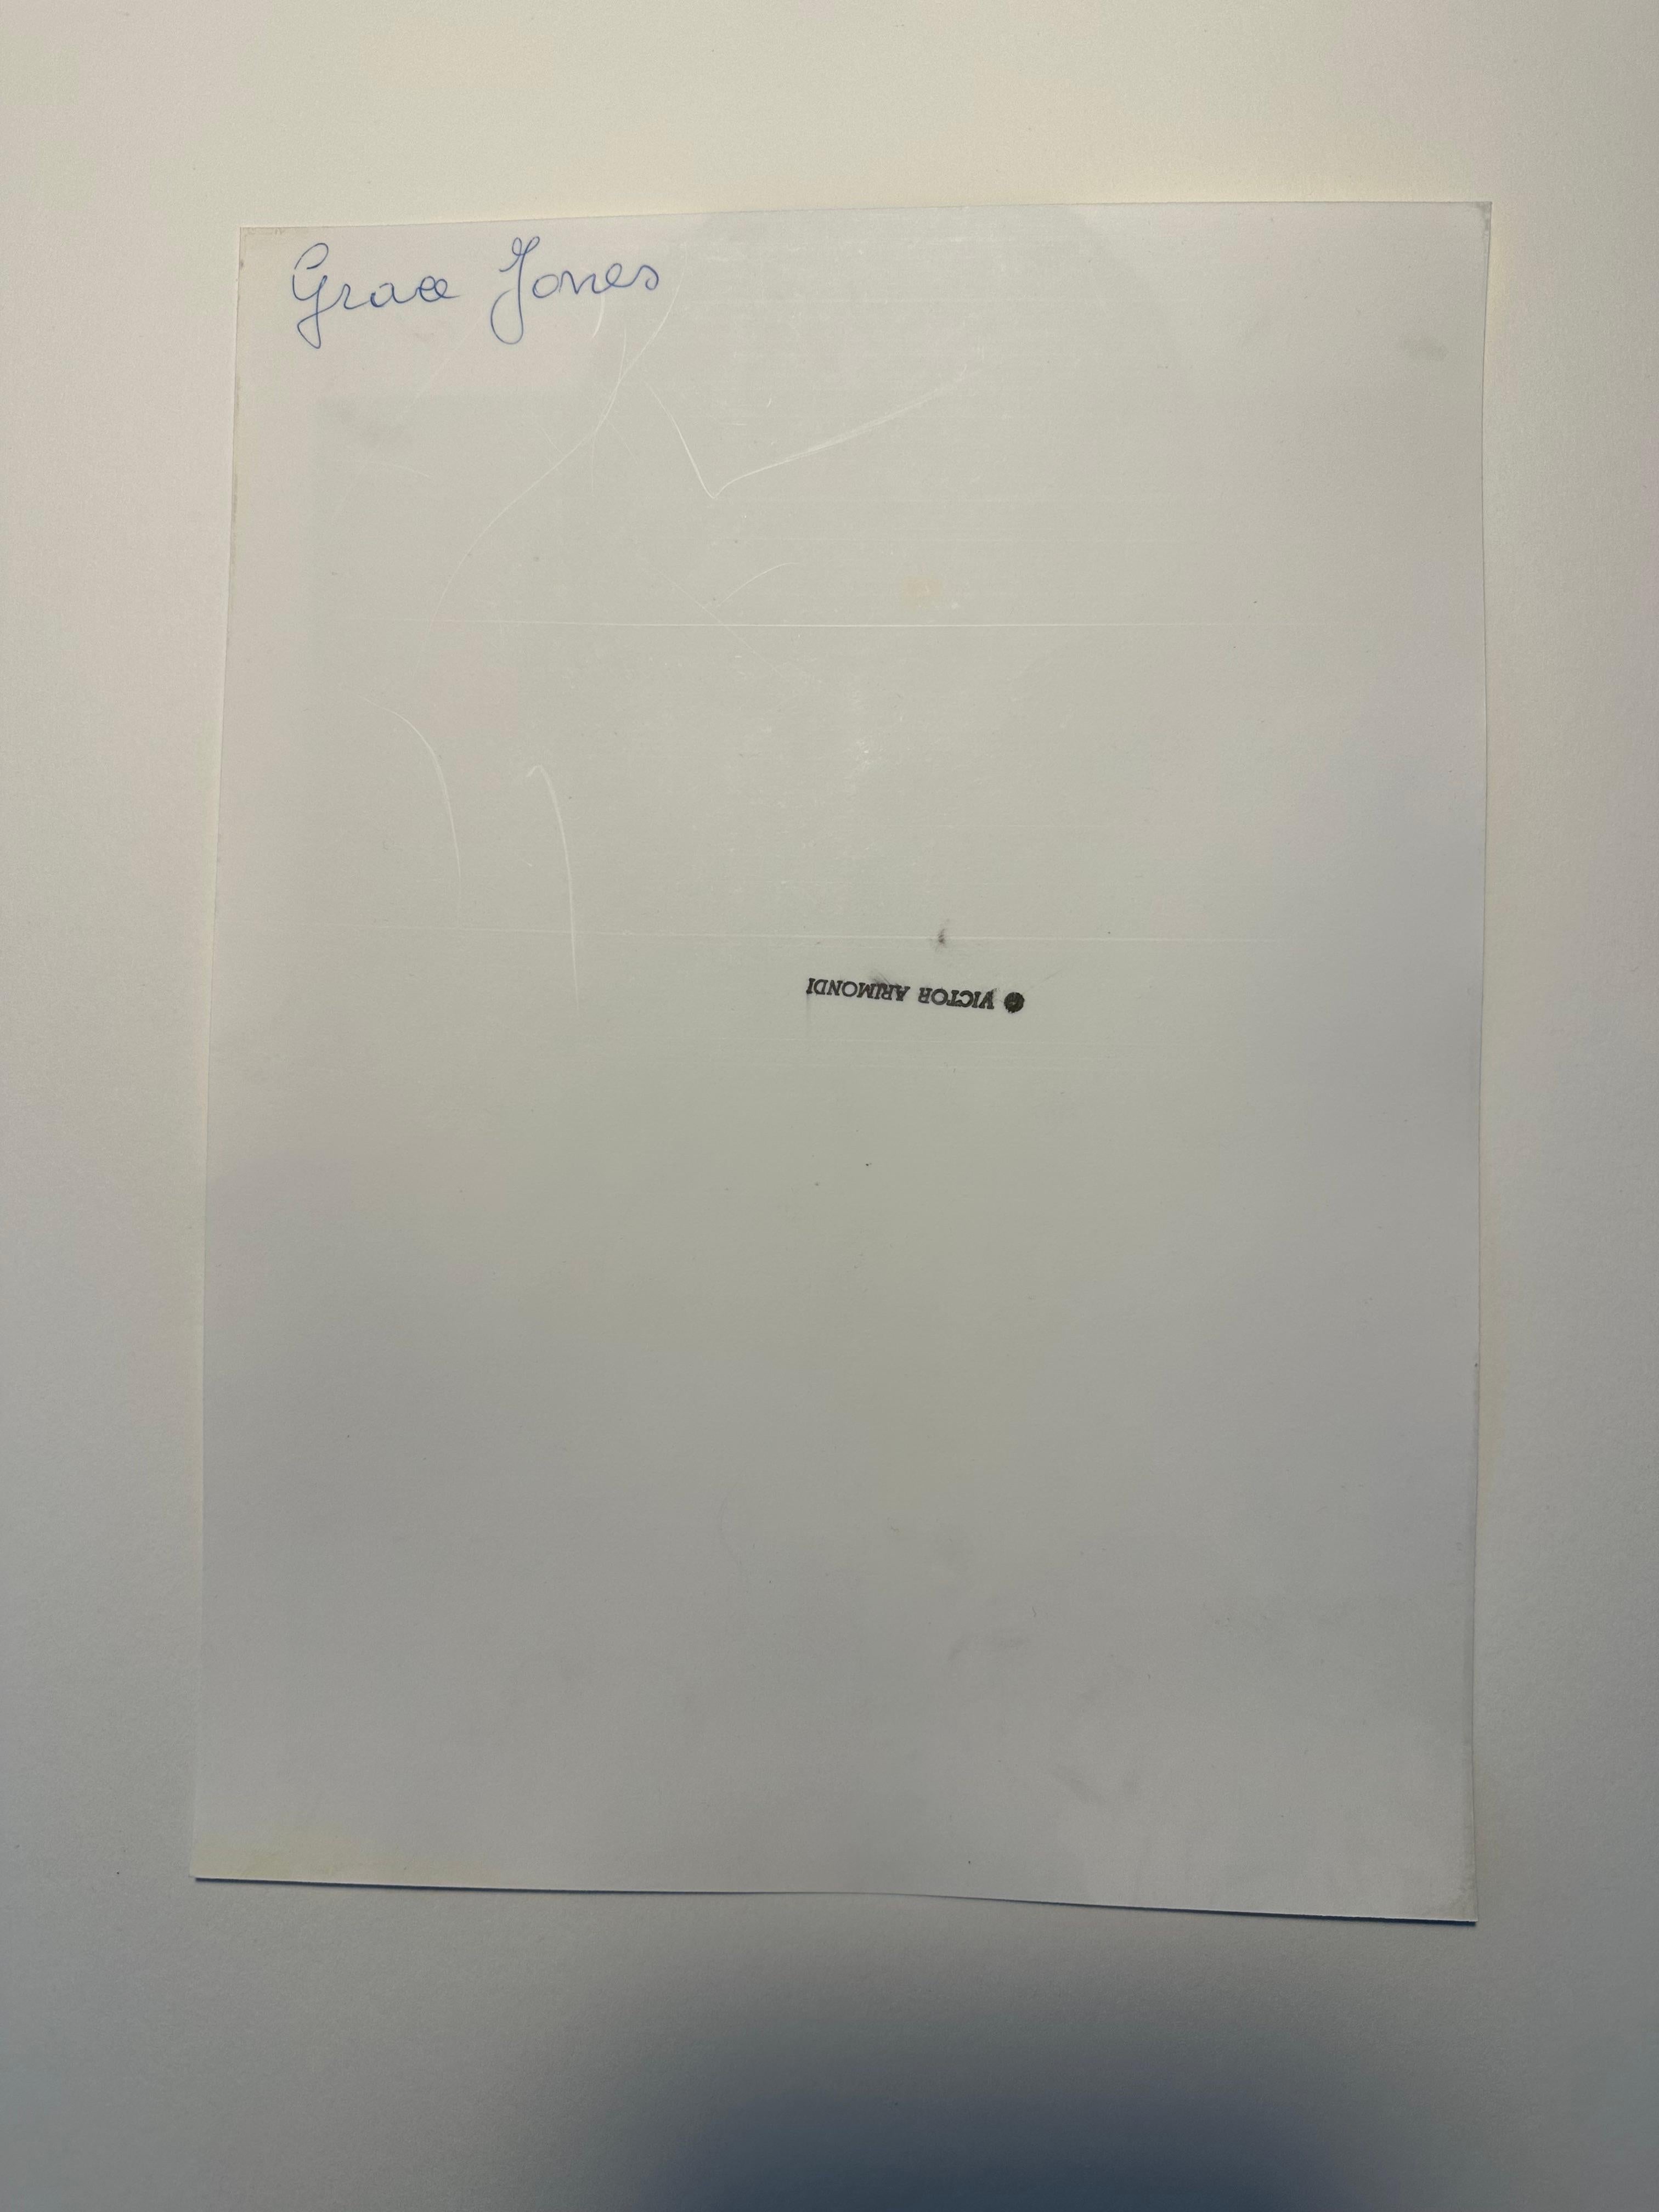 Victor Arimondi (1942-2001). Porträt von Grace Jones, 1975. Period print misst 8,5 x 11,25 Zoll; 10 x 13 Zoll gerahmt. Verso Stempel des Künstlerstudios.  

Ein Bild aus dieser Fotosession wurde für die Veröffentlichung in der Zeitschrift After